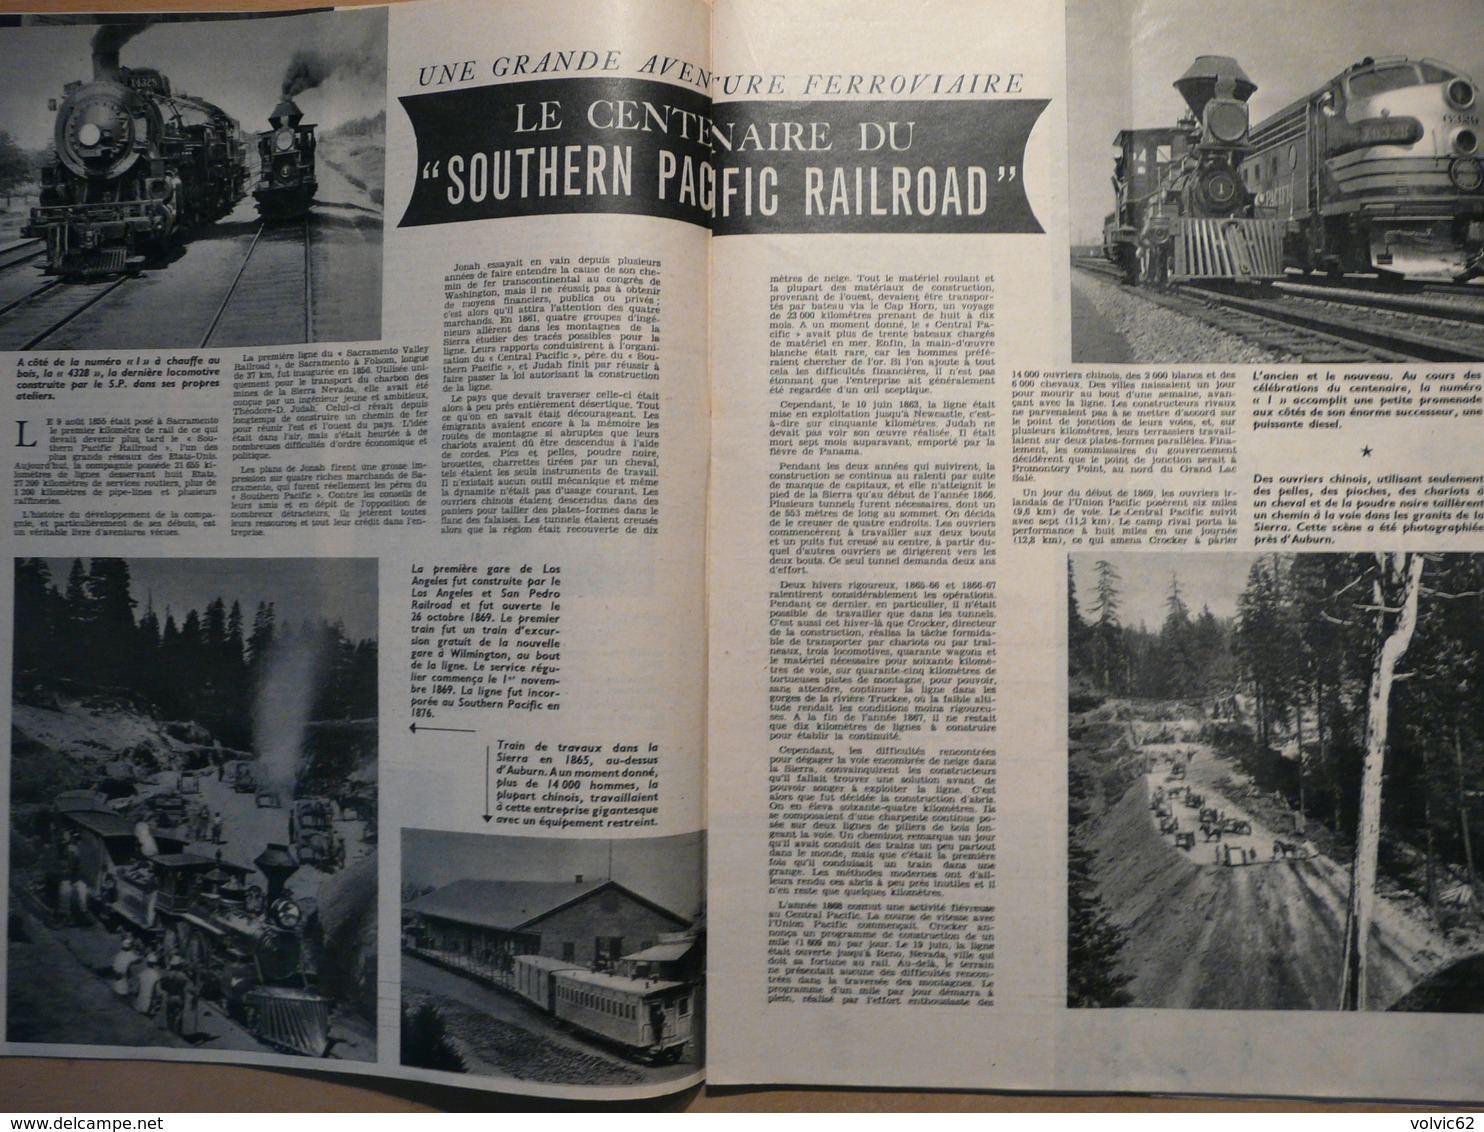 Vie du Rail 563 1956 donzère tarascon avignon arles St victor de Thizy Southern pacific railroad louis tollet